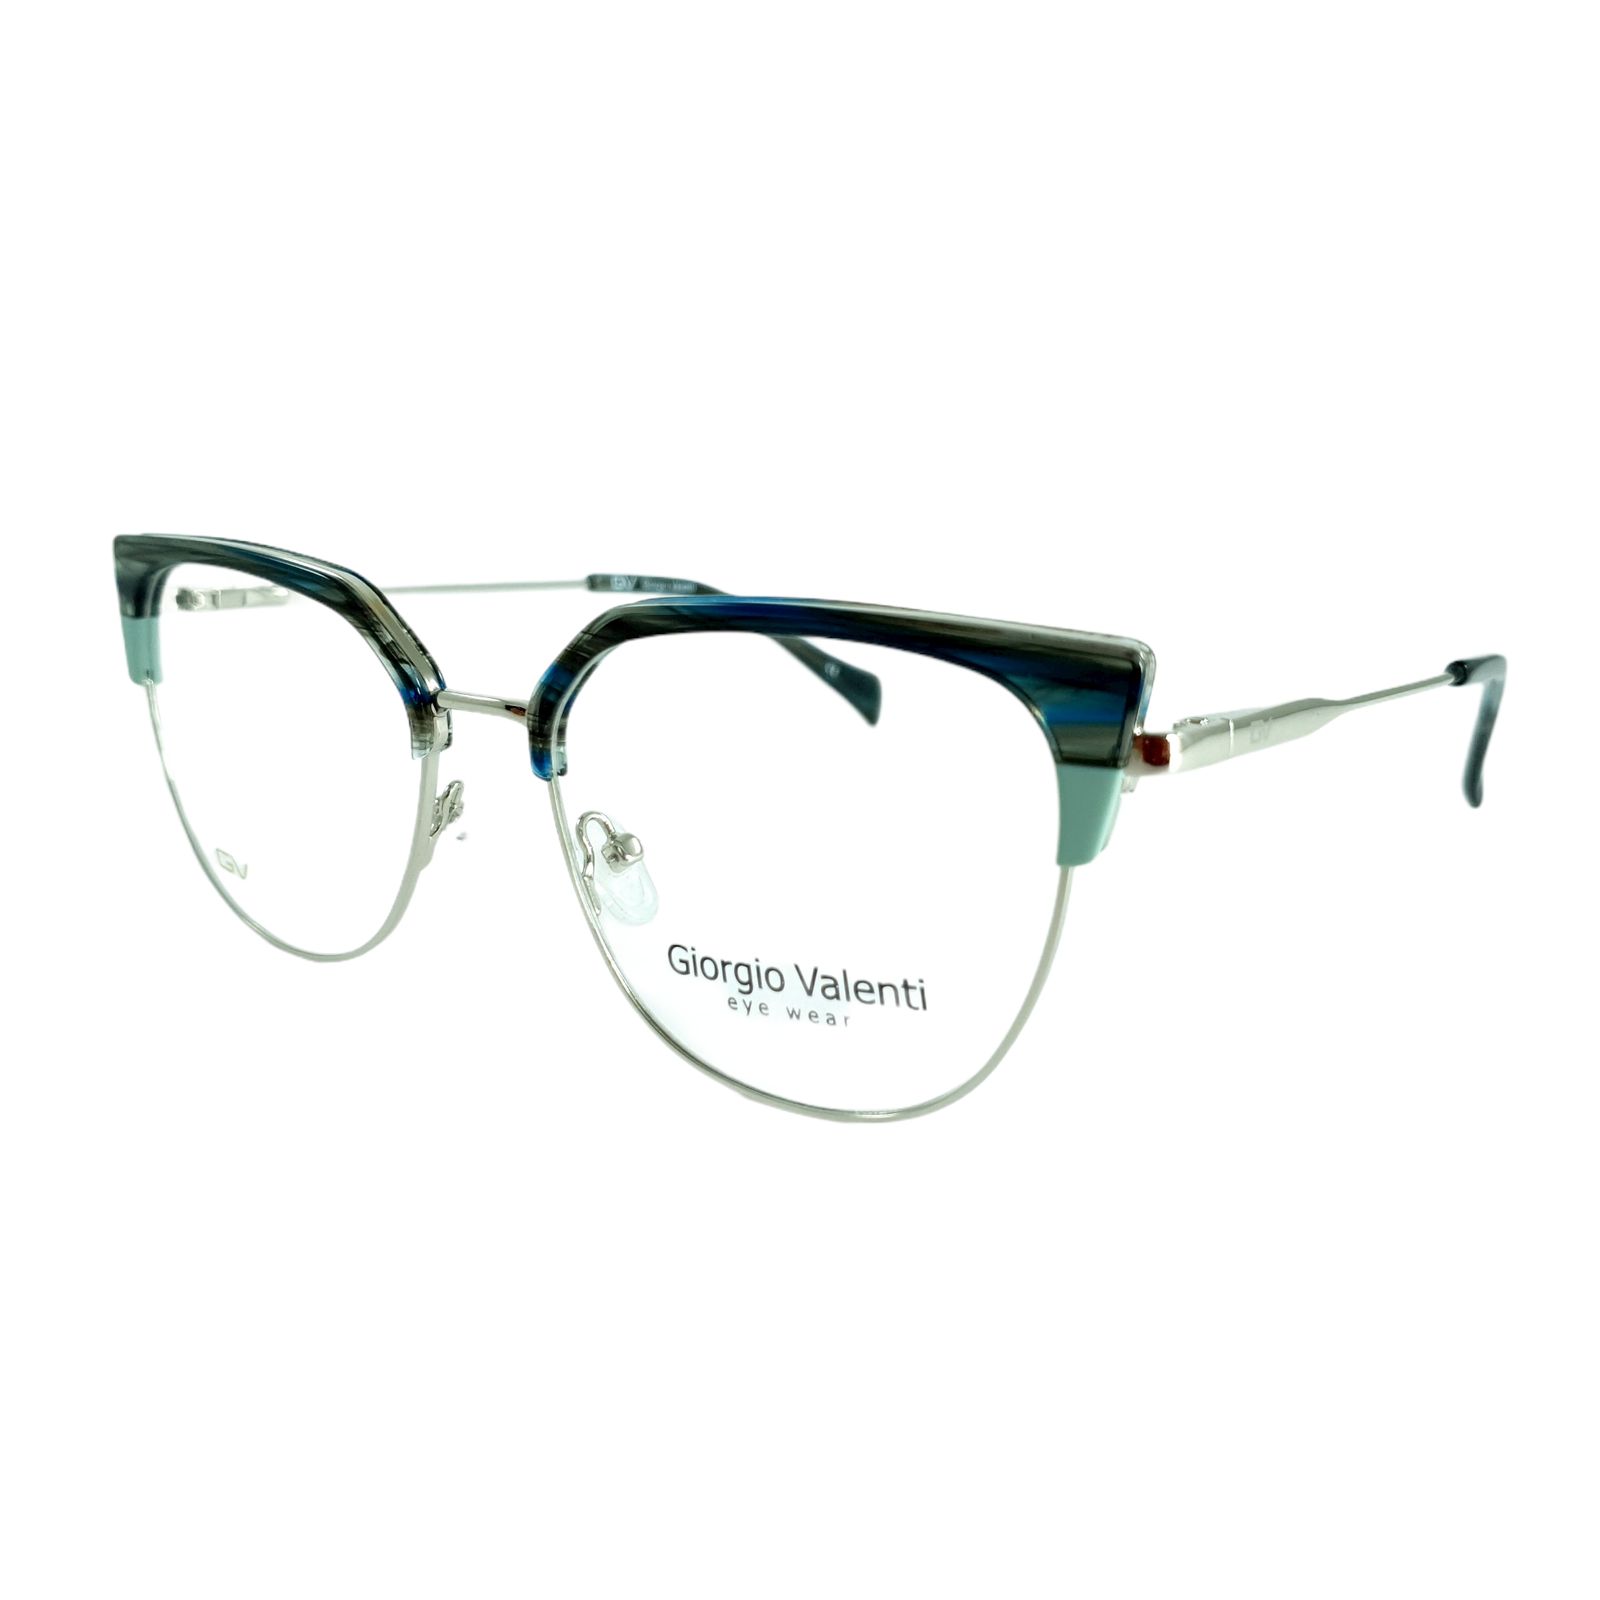 فریم عینک طبی زنانه جورجیو ولنتی مدل GV-4727 -  - 1